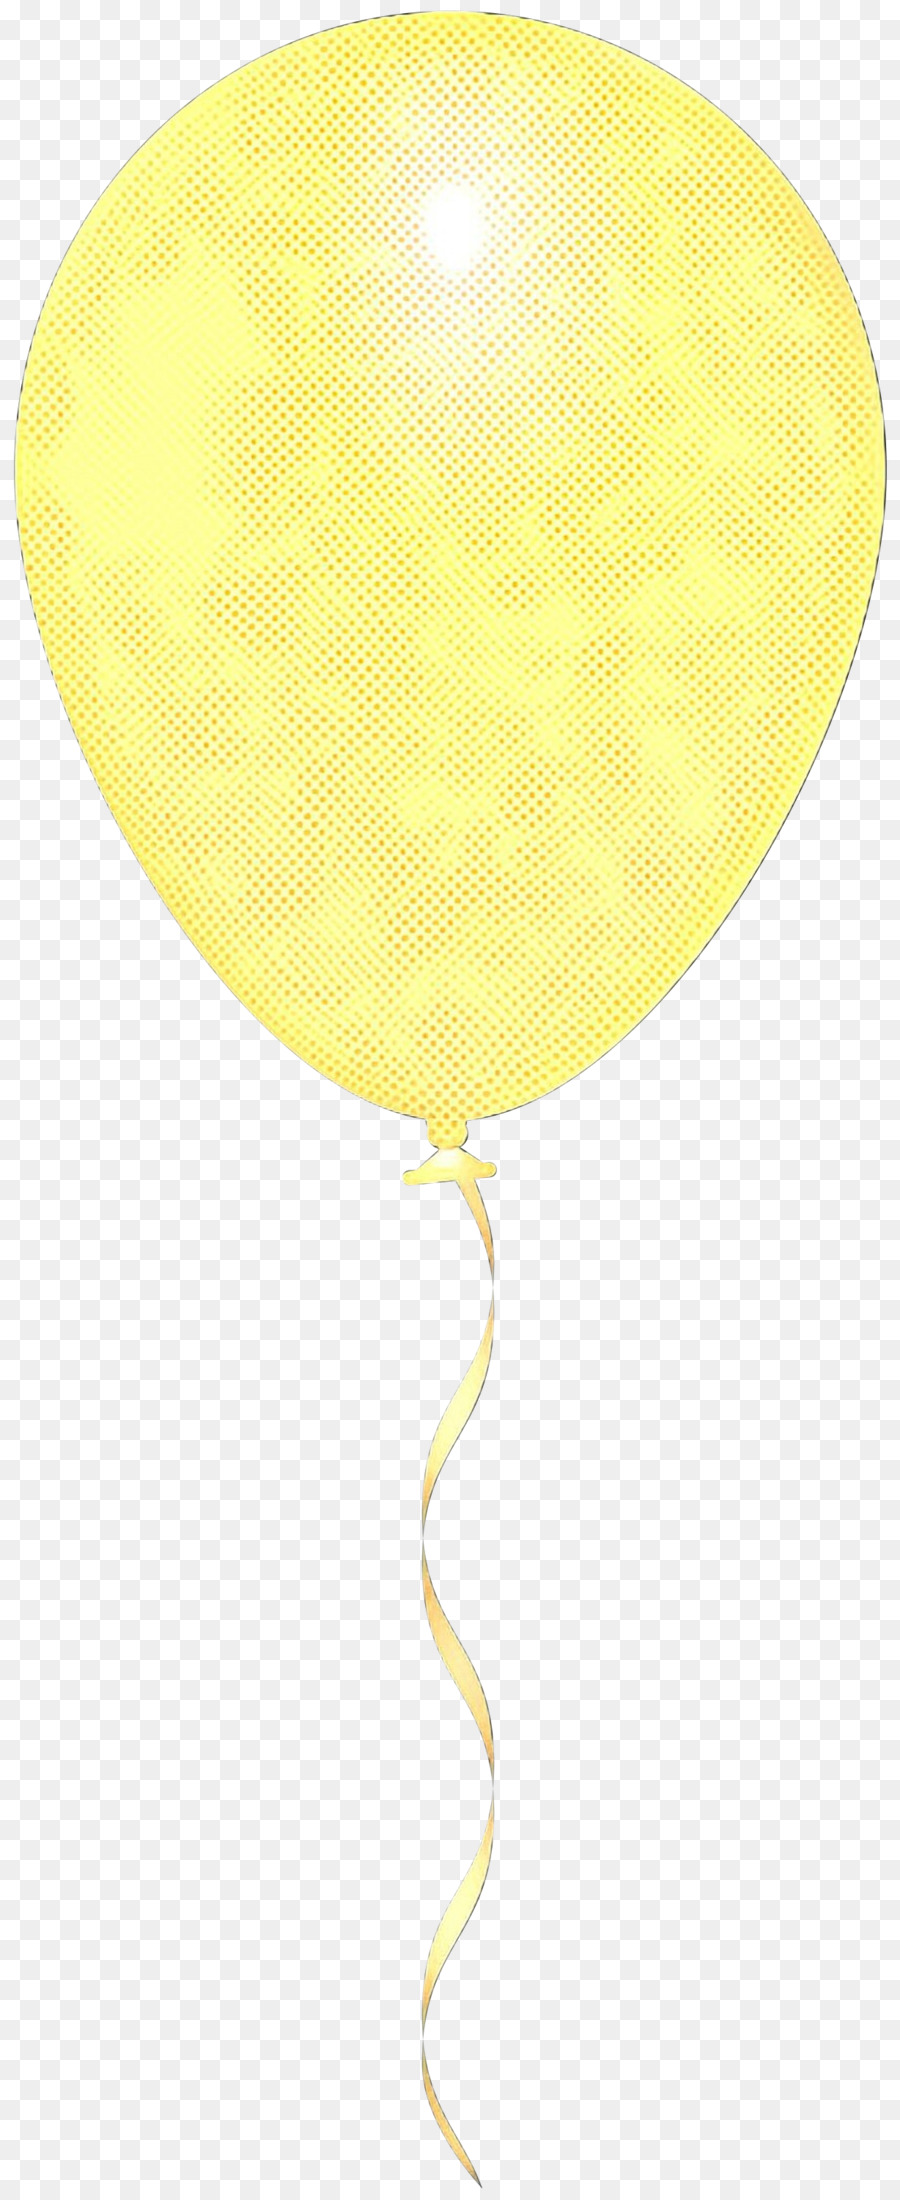 Thiết kế sản phẩm Balloon Yellow - 